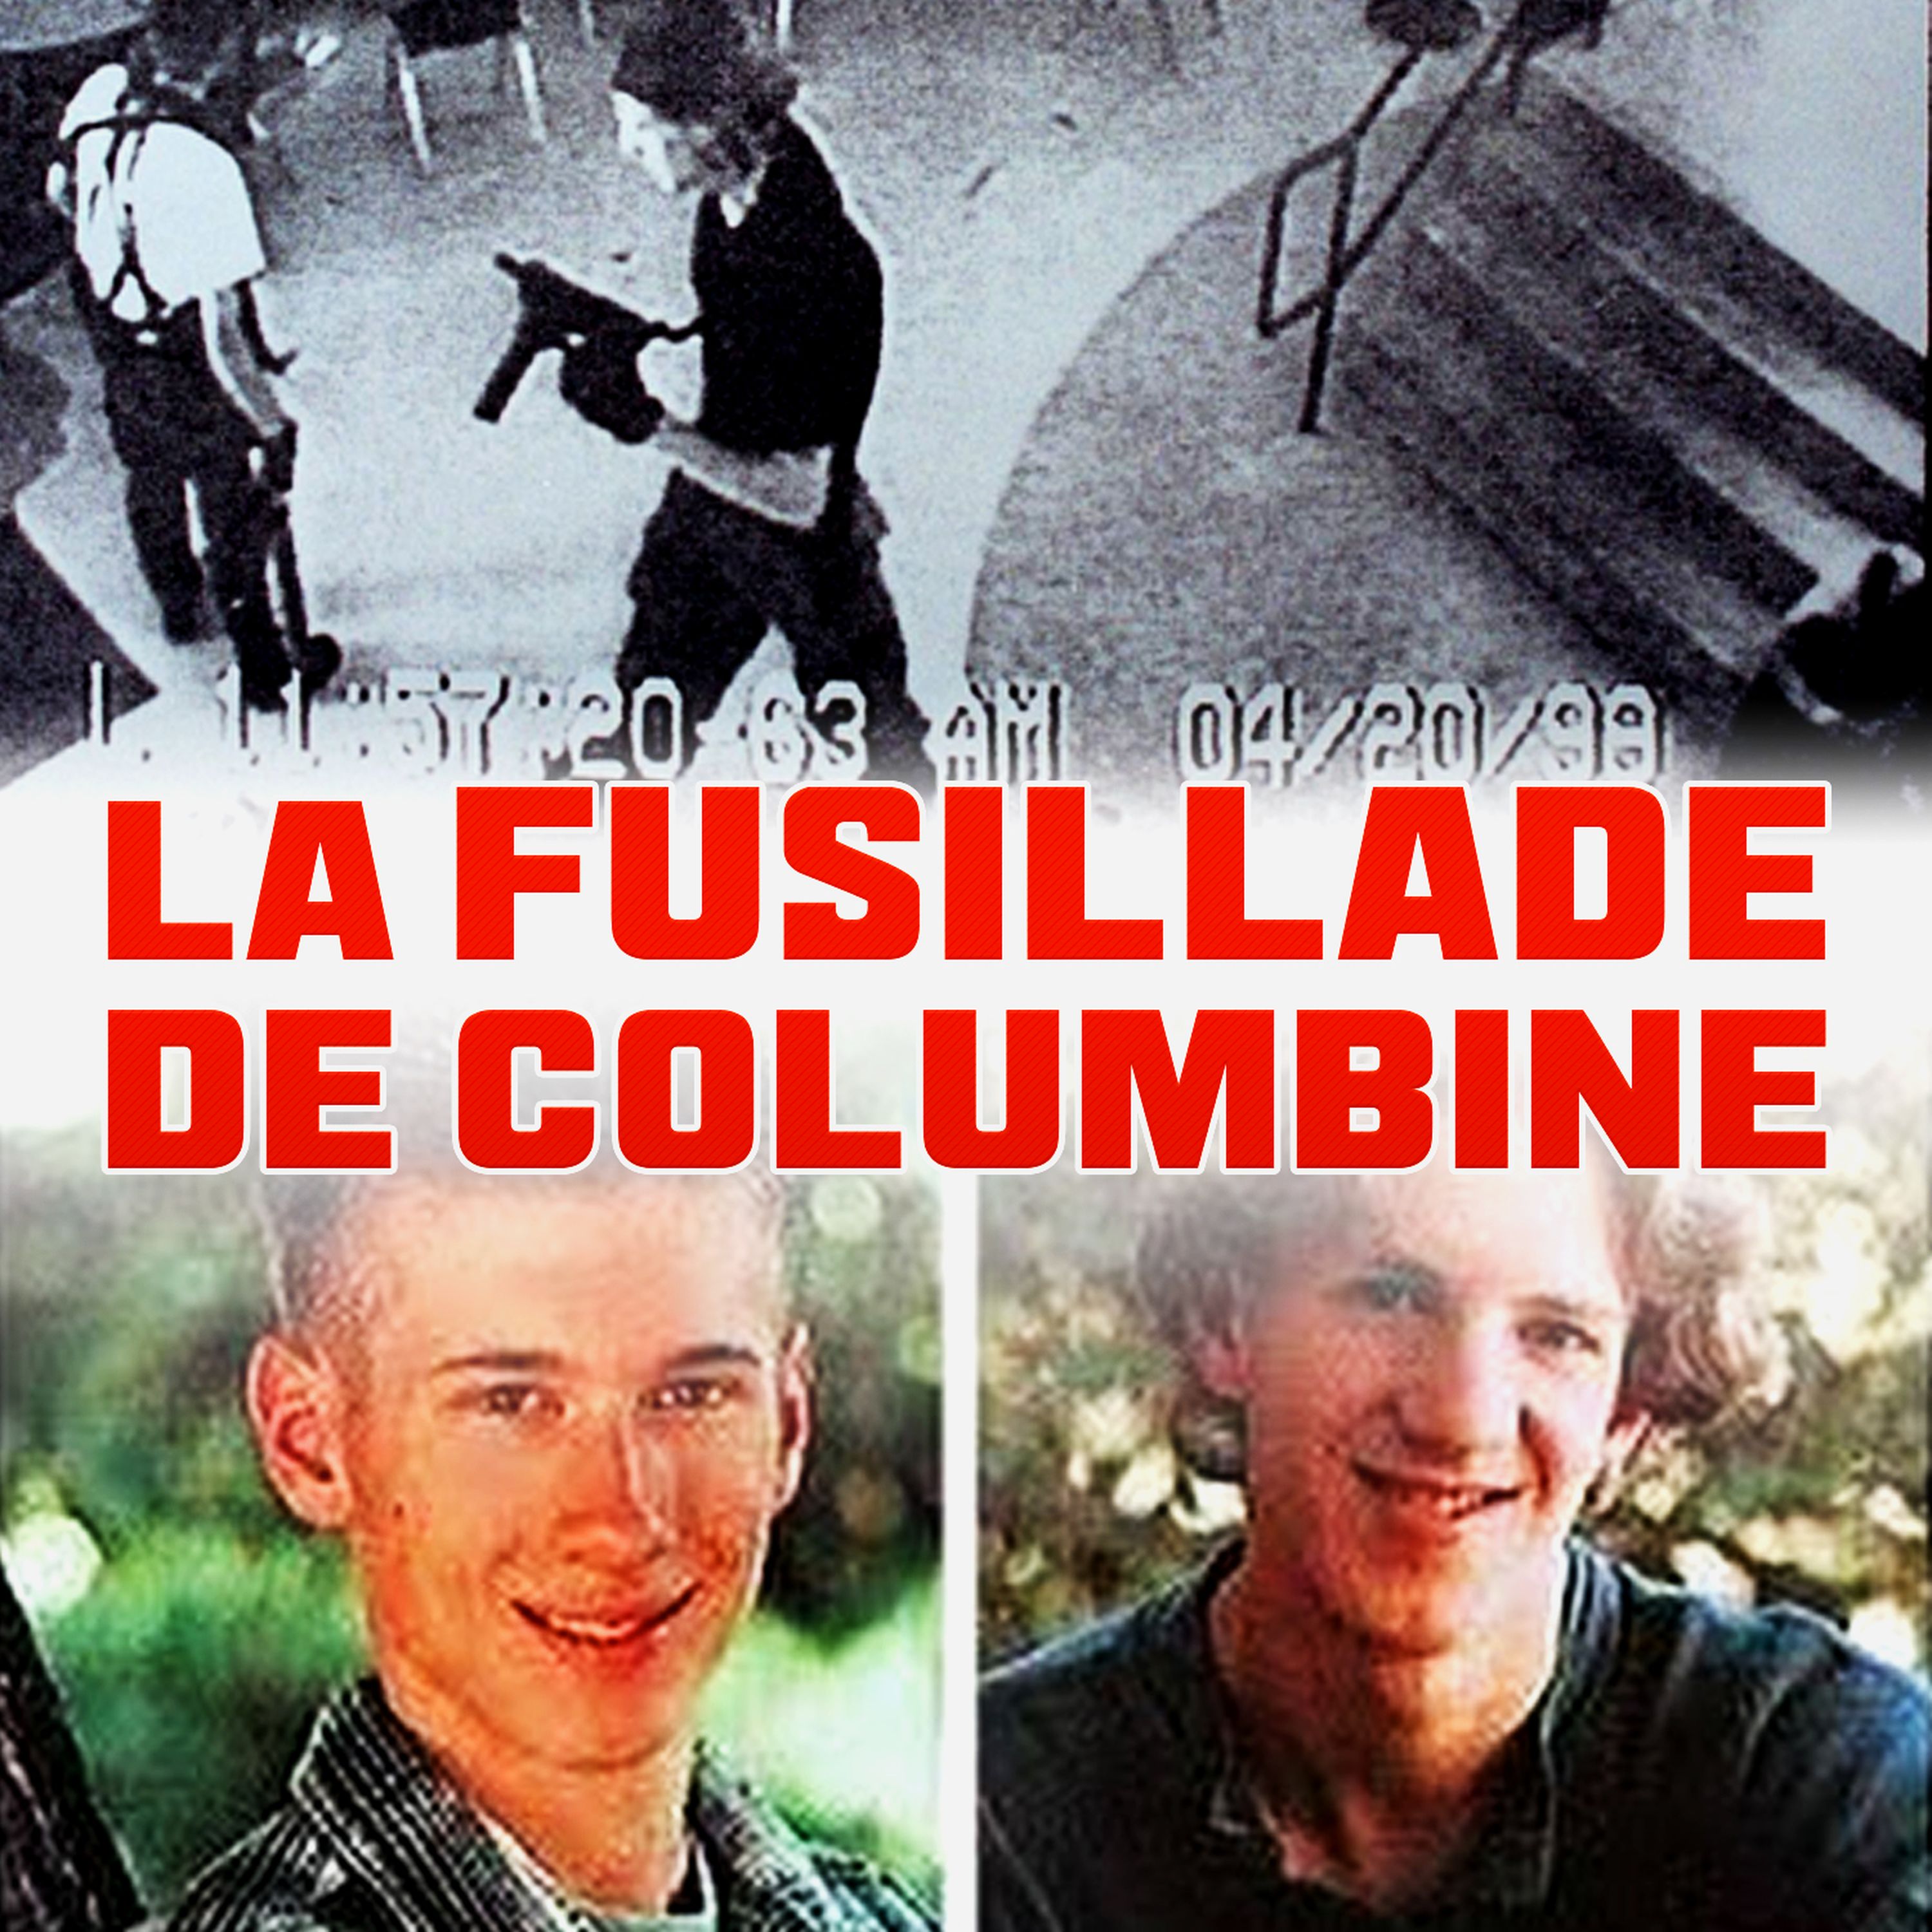 La fusillade de Columbine